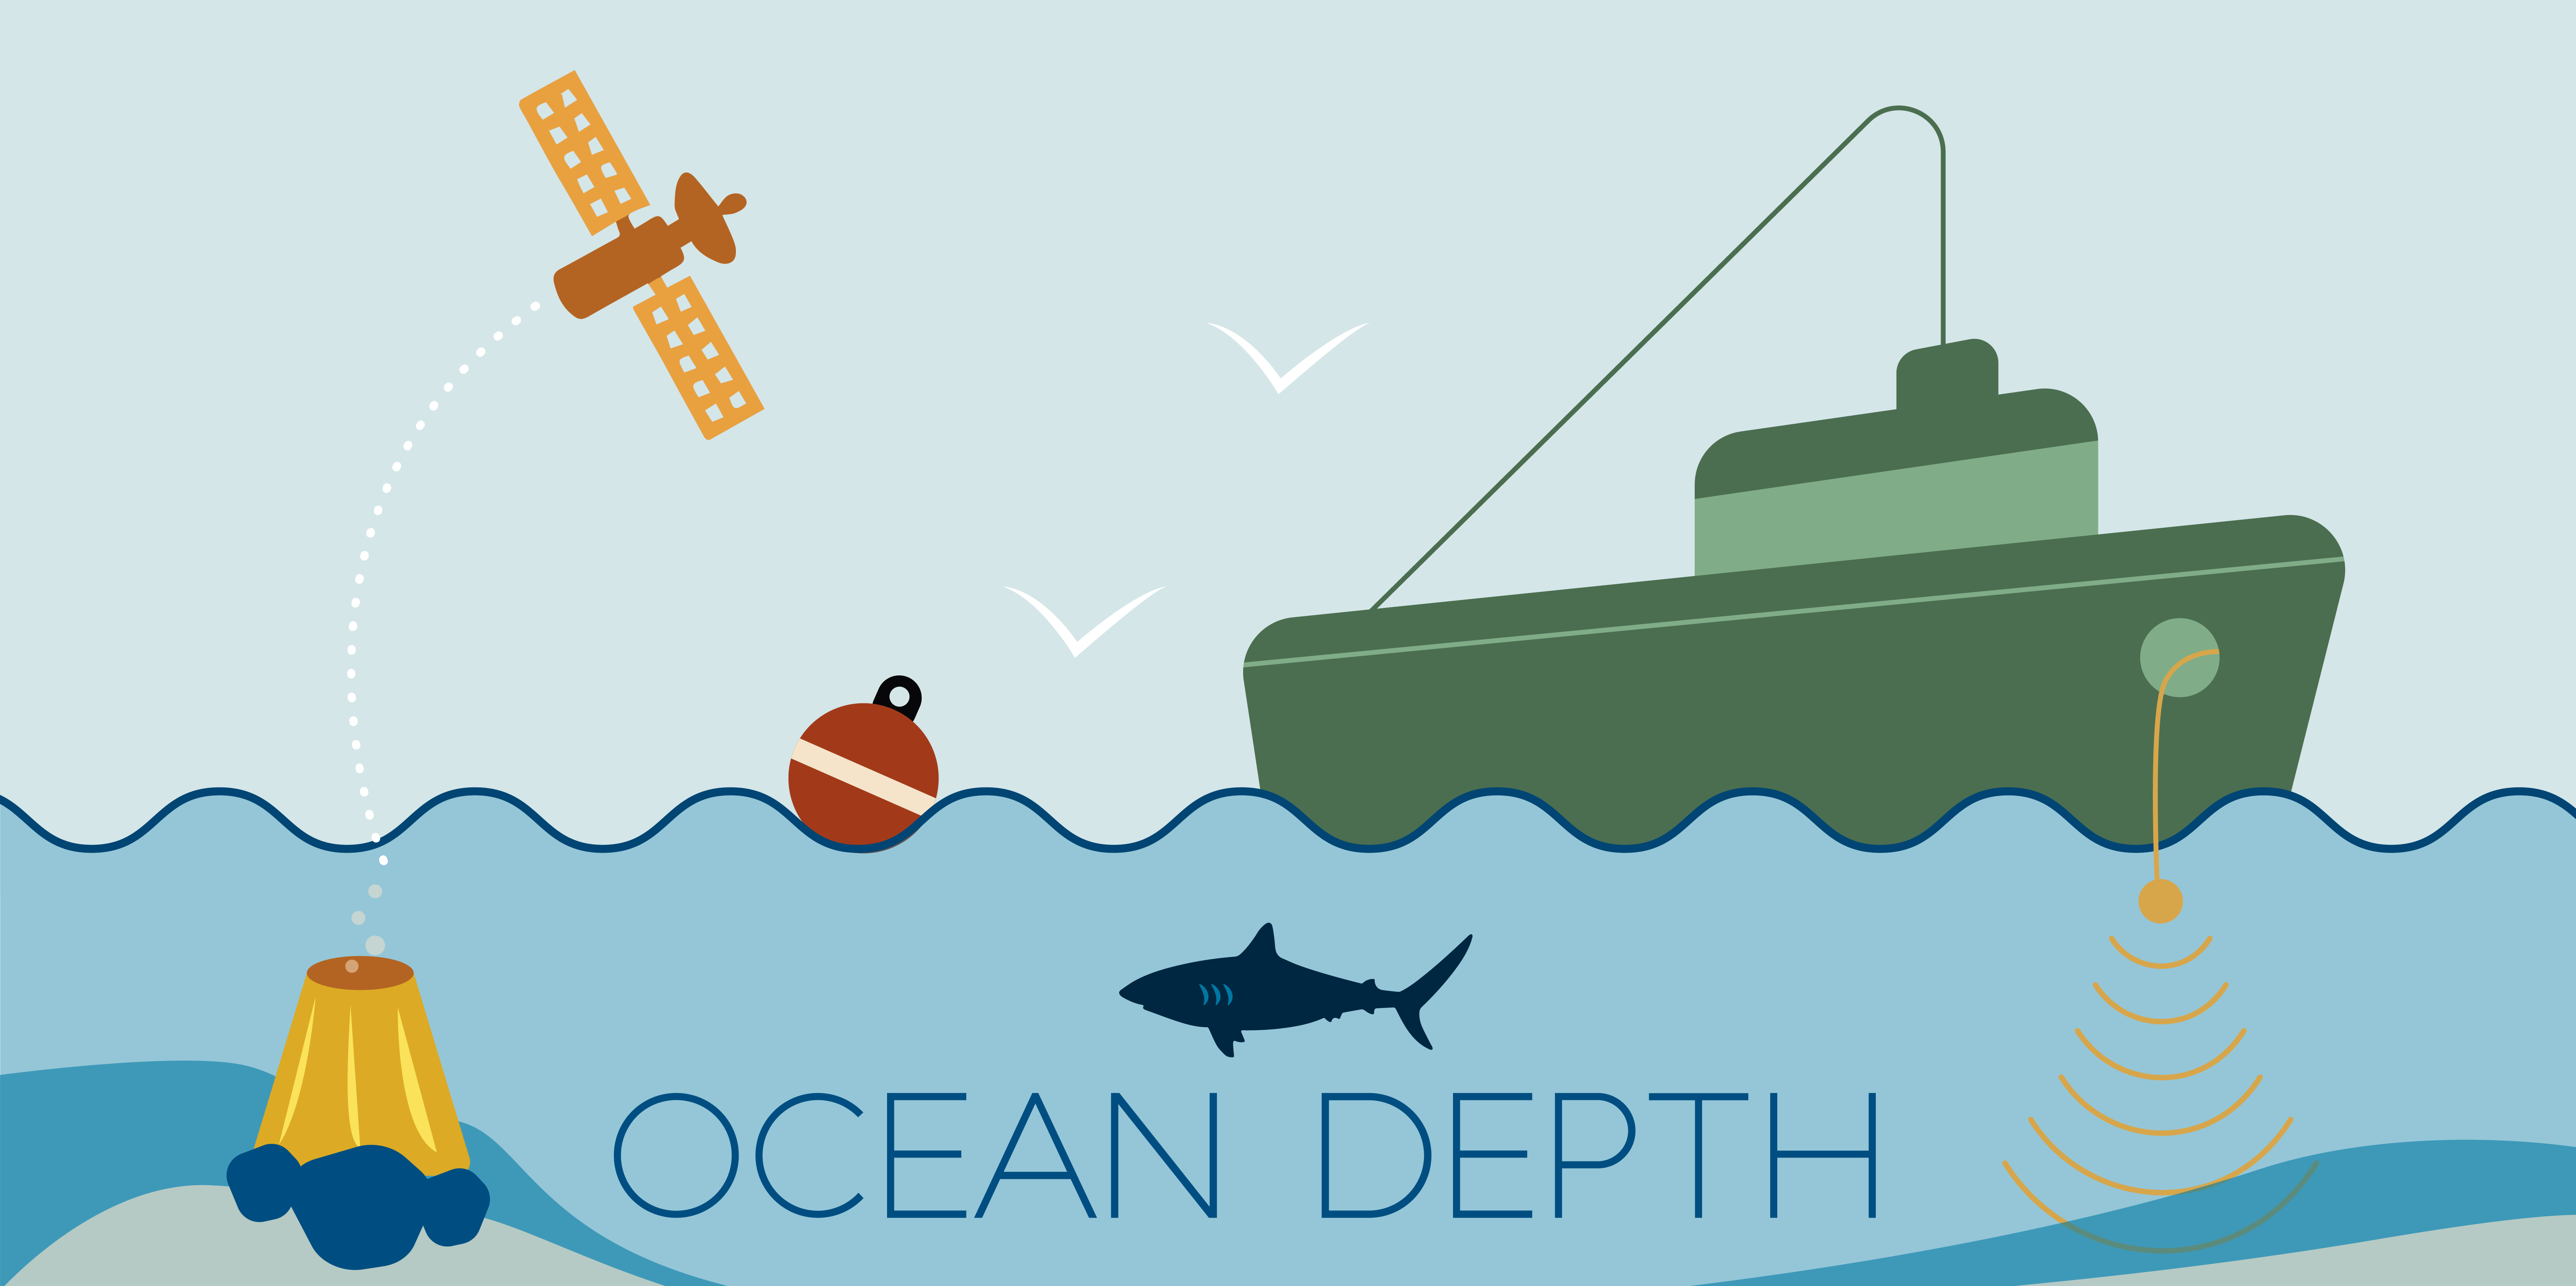 10 ~ Ocean Depths ~ ideas  ocean depth, ocean, blue ocean